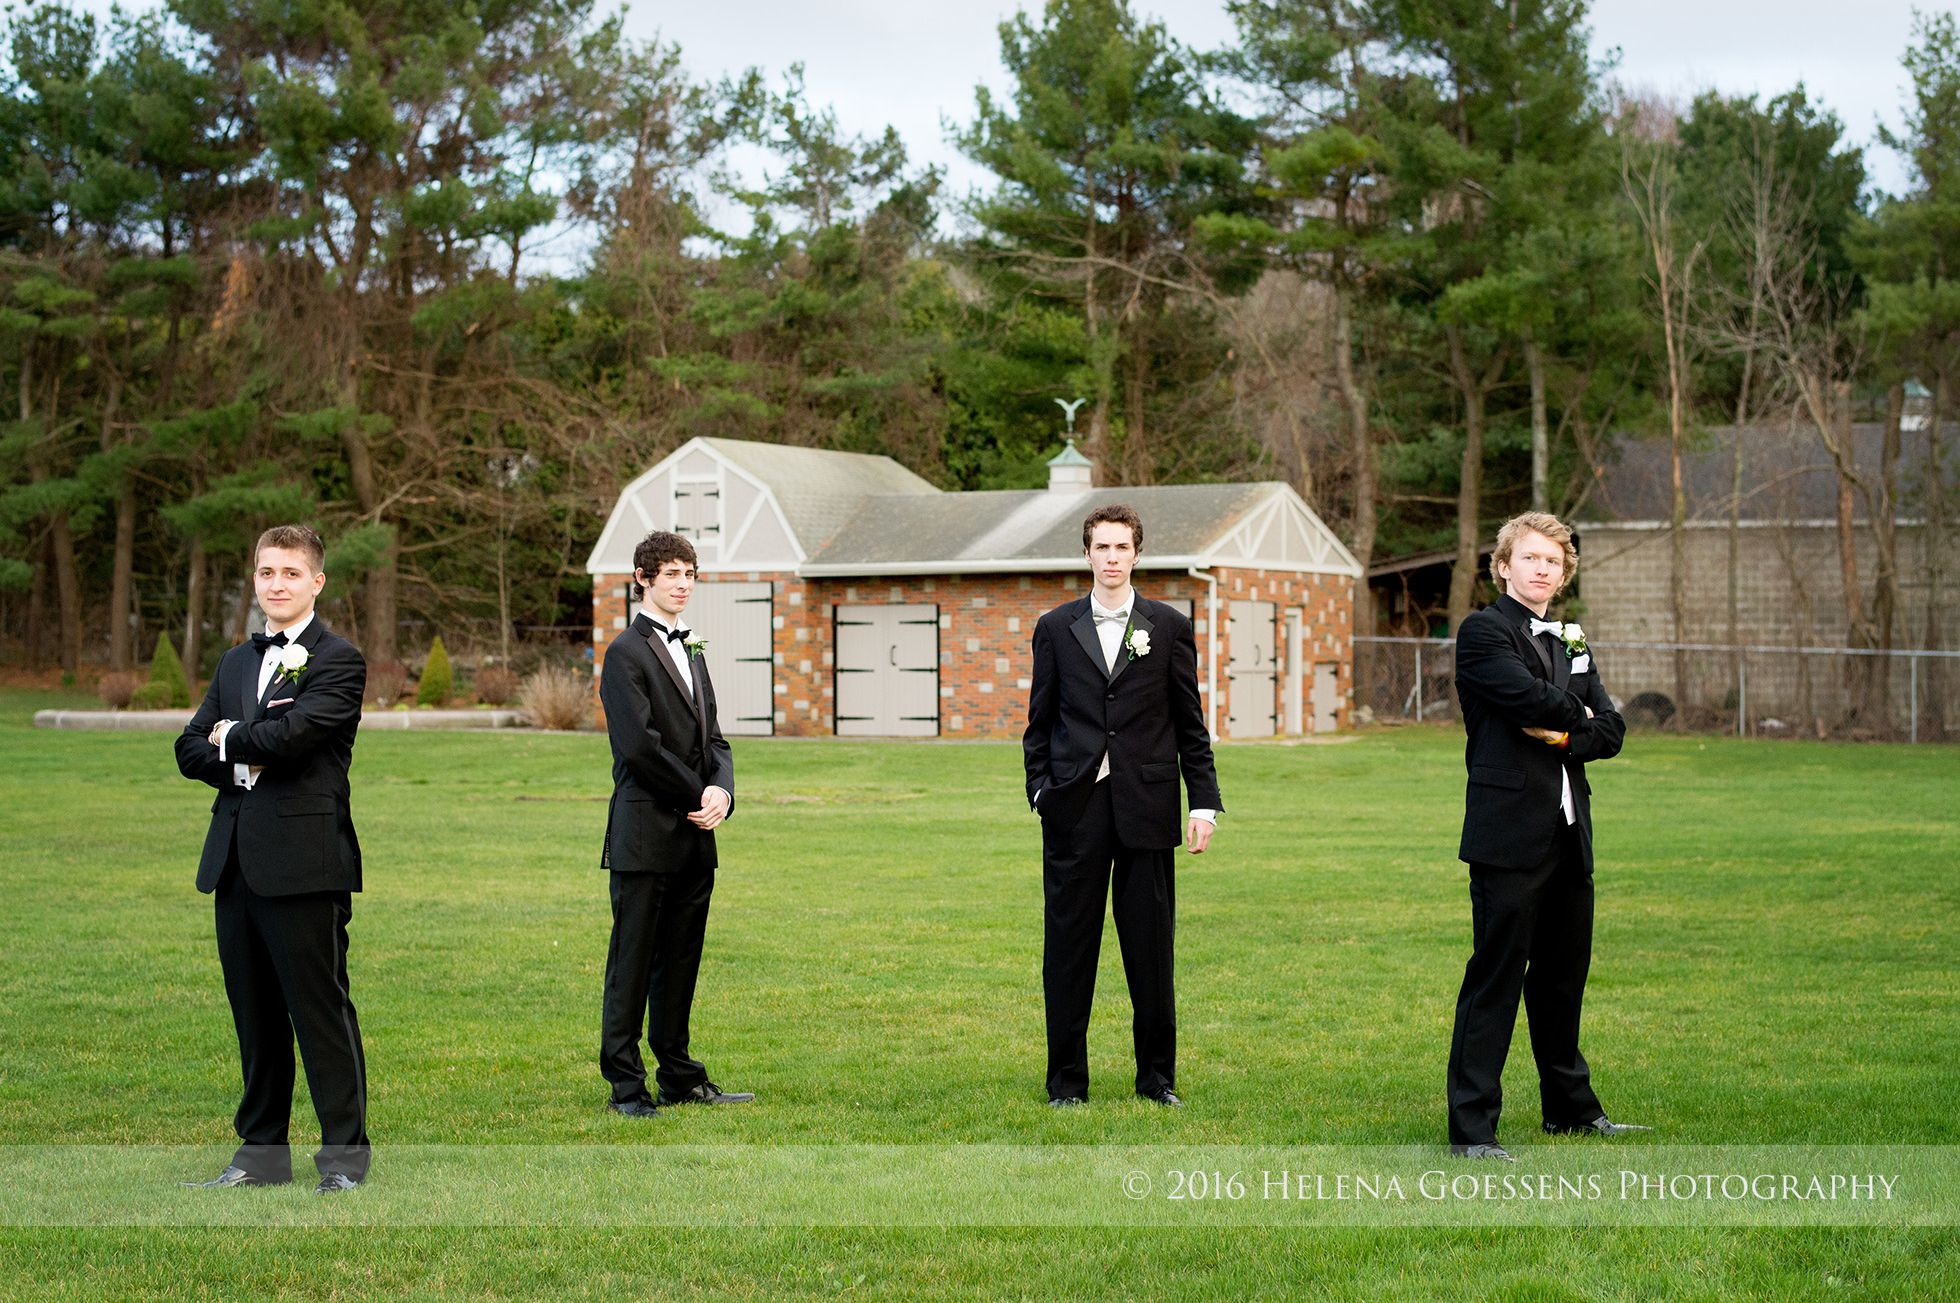 Four senior boys wearing black tuxedos